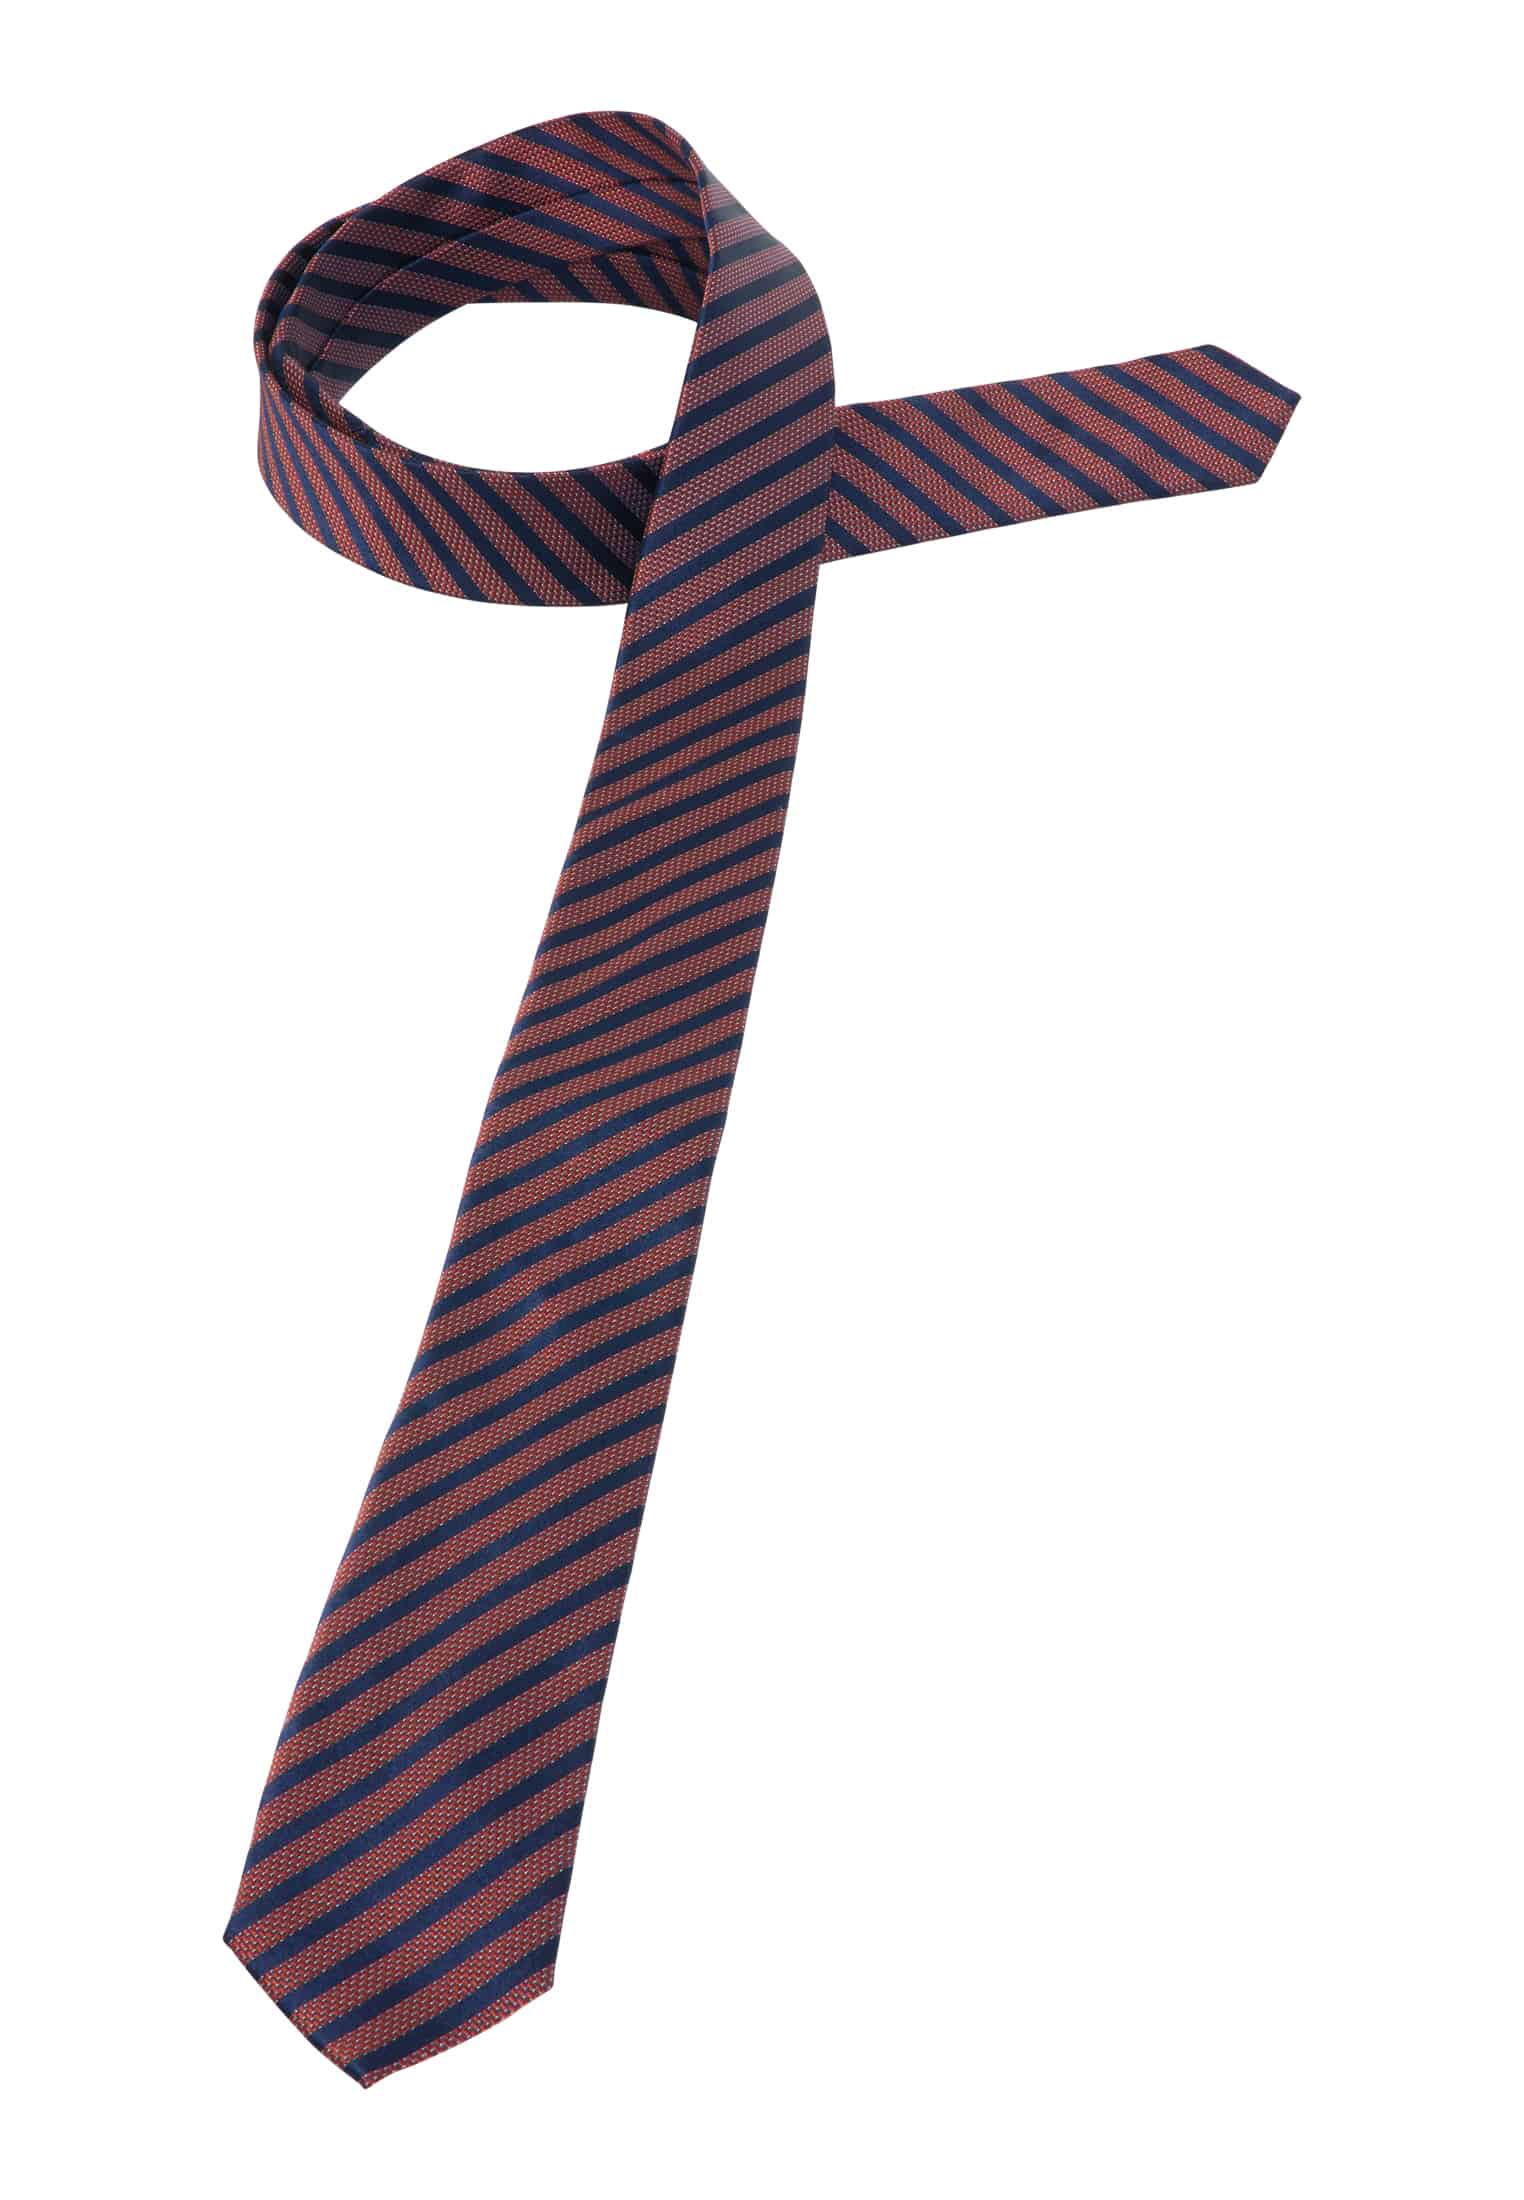 Krawatte in | rot | 1AC01894-05-01-142 rot | gestreift 142